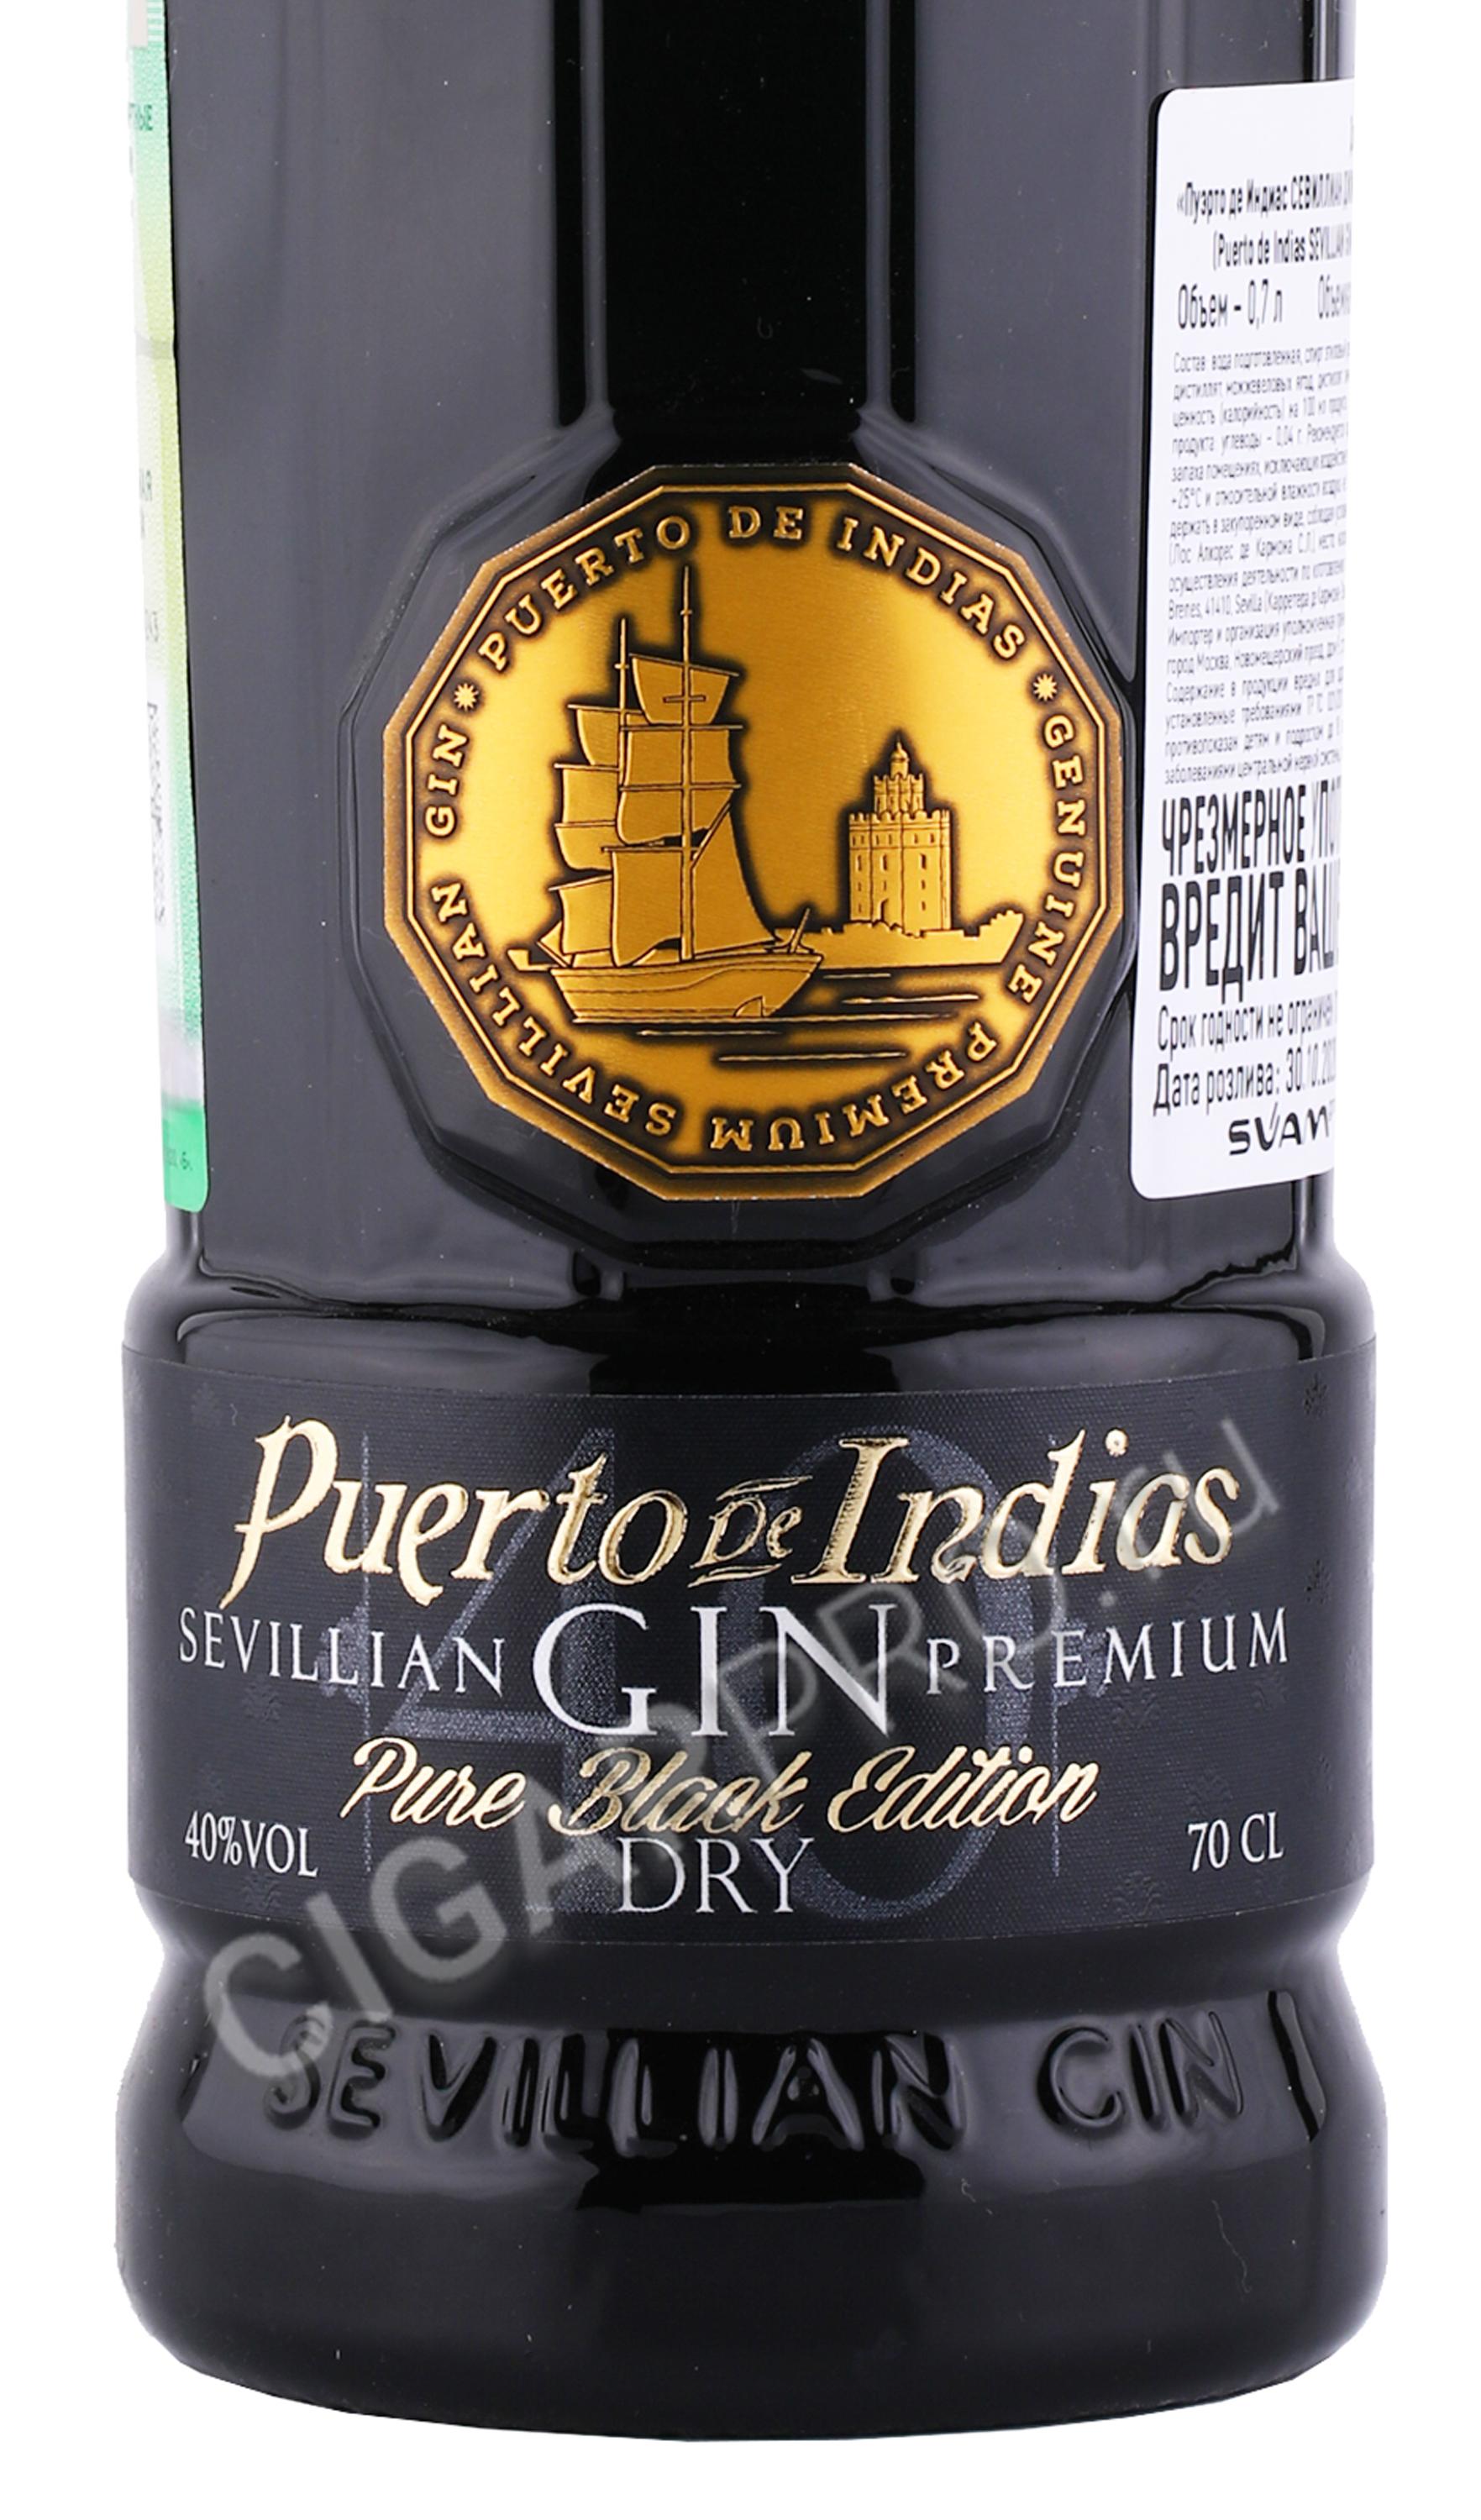 Puerto De Indias де Пьюэ Sevillian Pure Джин Пуэрто купить Блэк Эдишен Premium Севиллиан Gin Премиум цена Dry Black Edition Индиас 0.7л